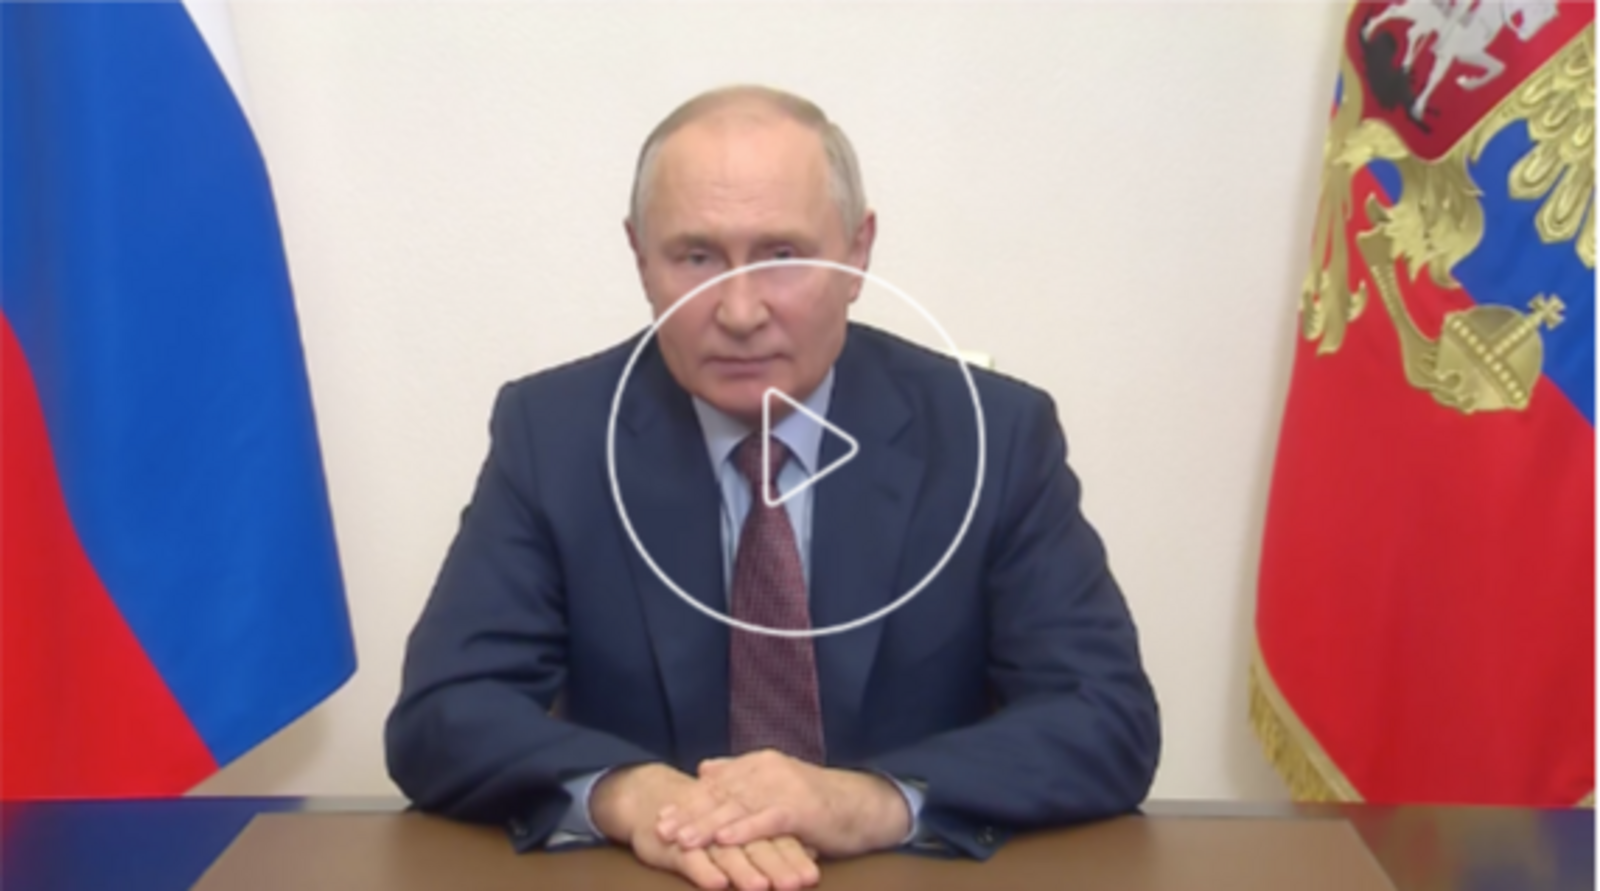 Видеообращение В. Путина по случаю Дня работника сельского хозяйства и перерабатывающей промышленности